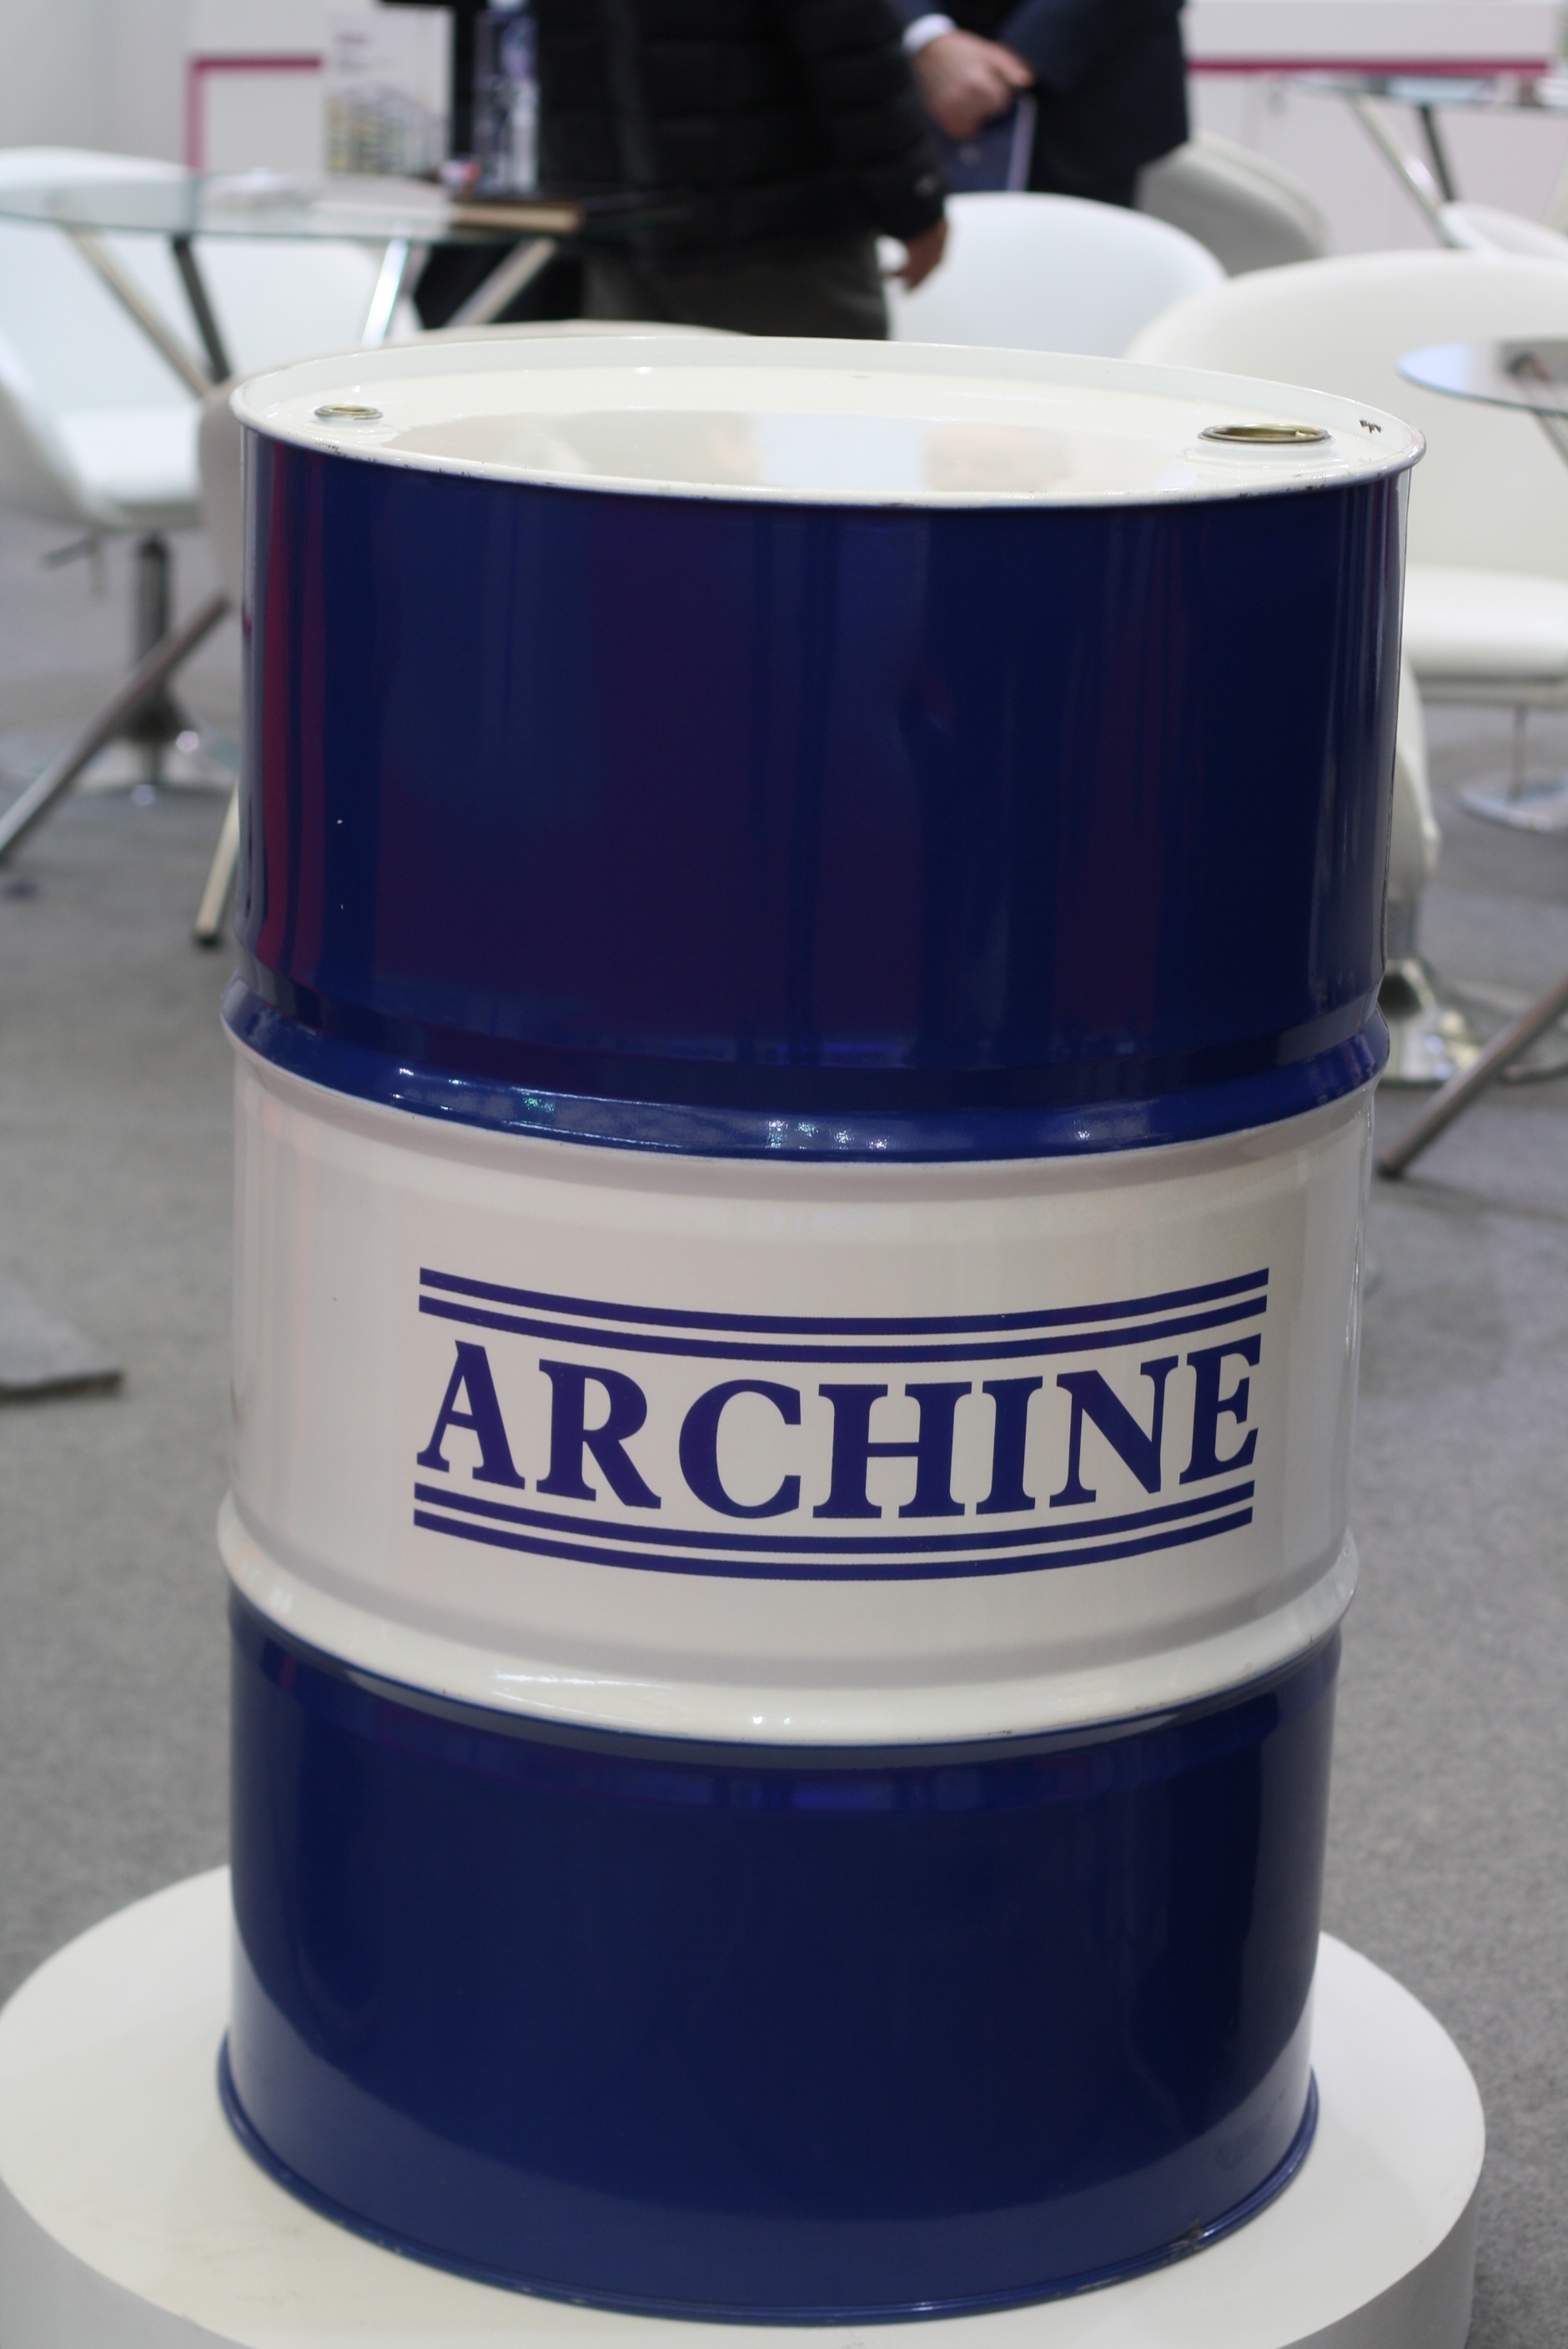 ArChine高温合成链条油